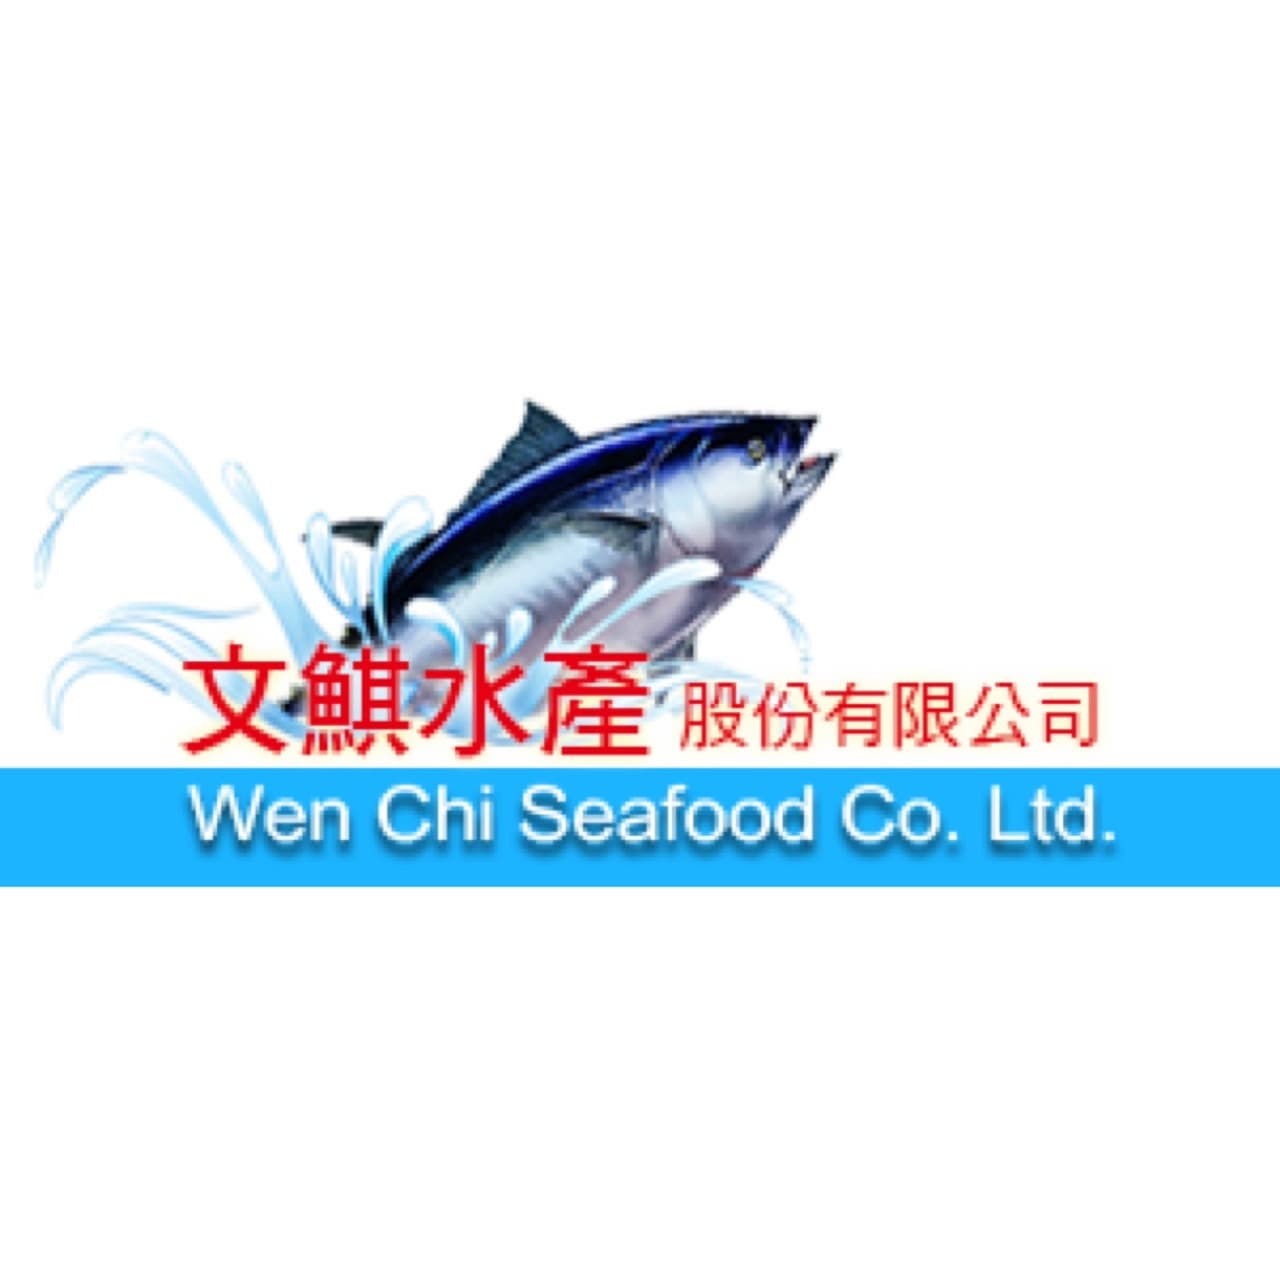 Wen Chi Seafood